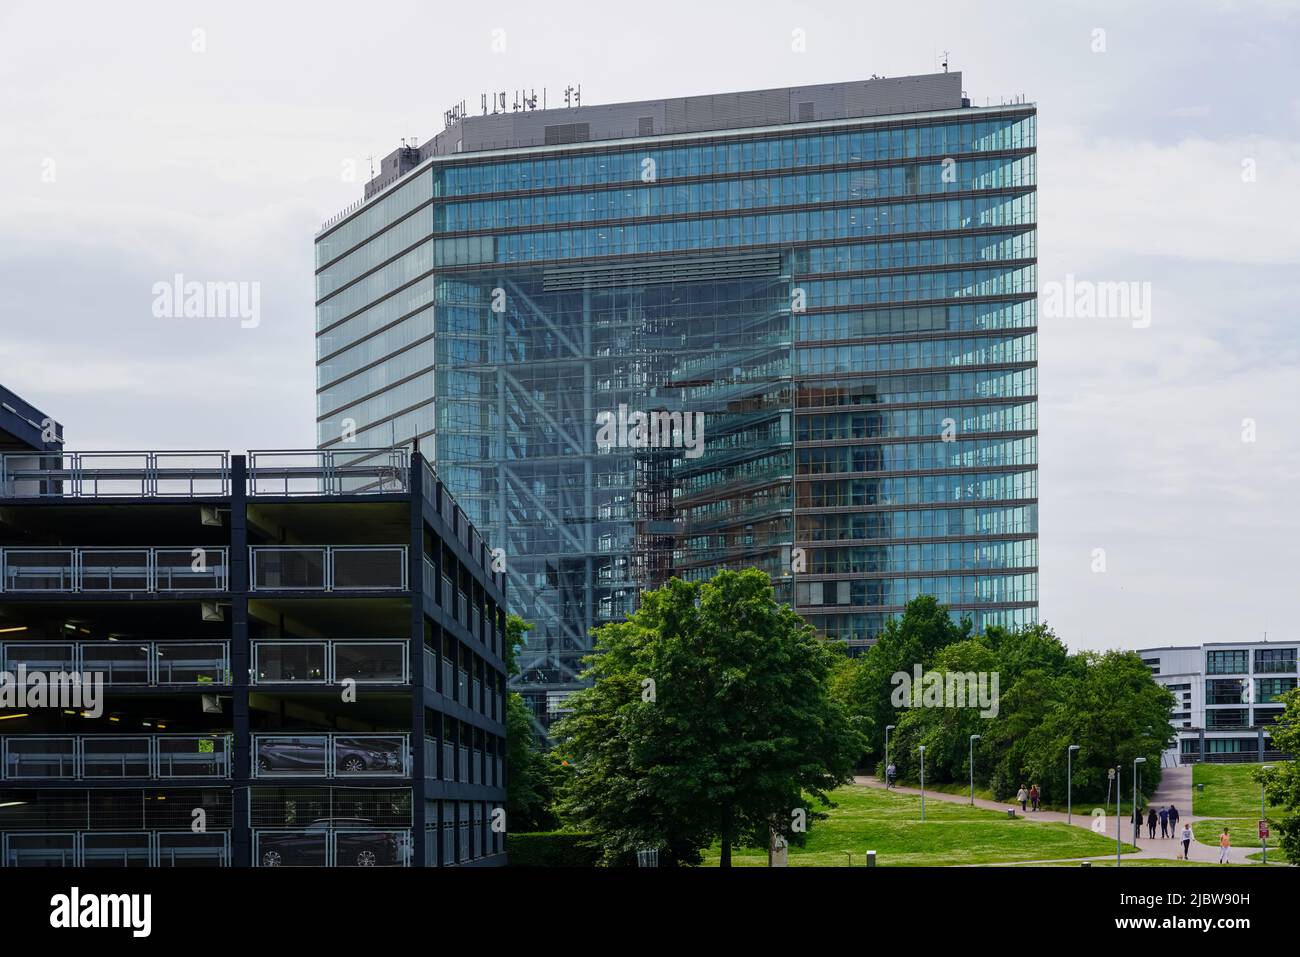 Le Stadttor est une tour de bureaux située dans le quartier Unterbilk de Düsseldorf, Rhénanie-du-Nord-Westphalie, Allemagne, 23.5.22 Banque D'Images